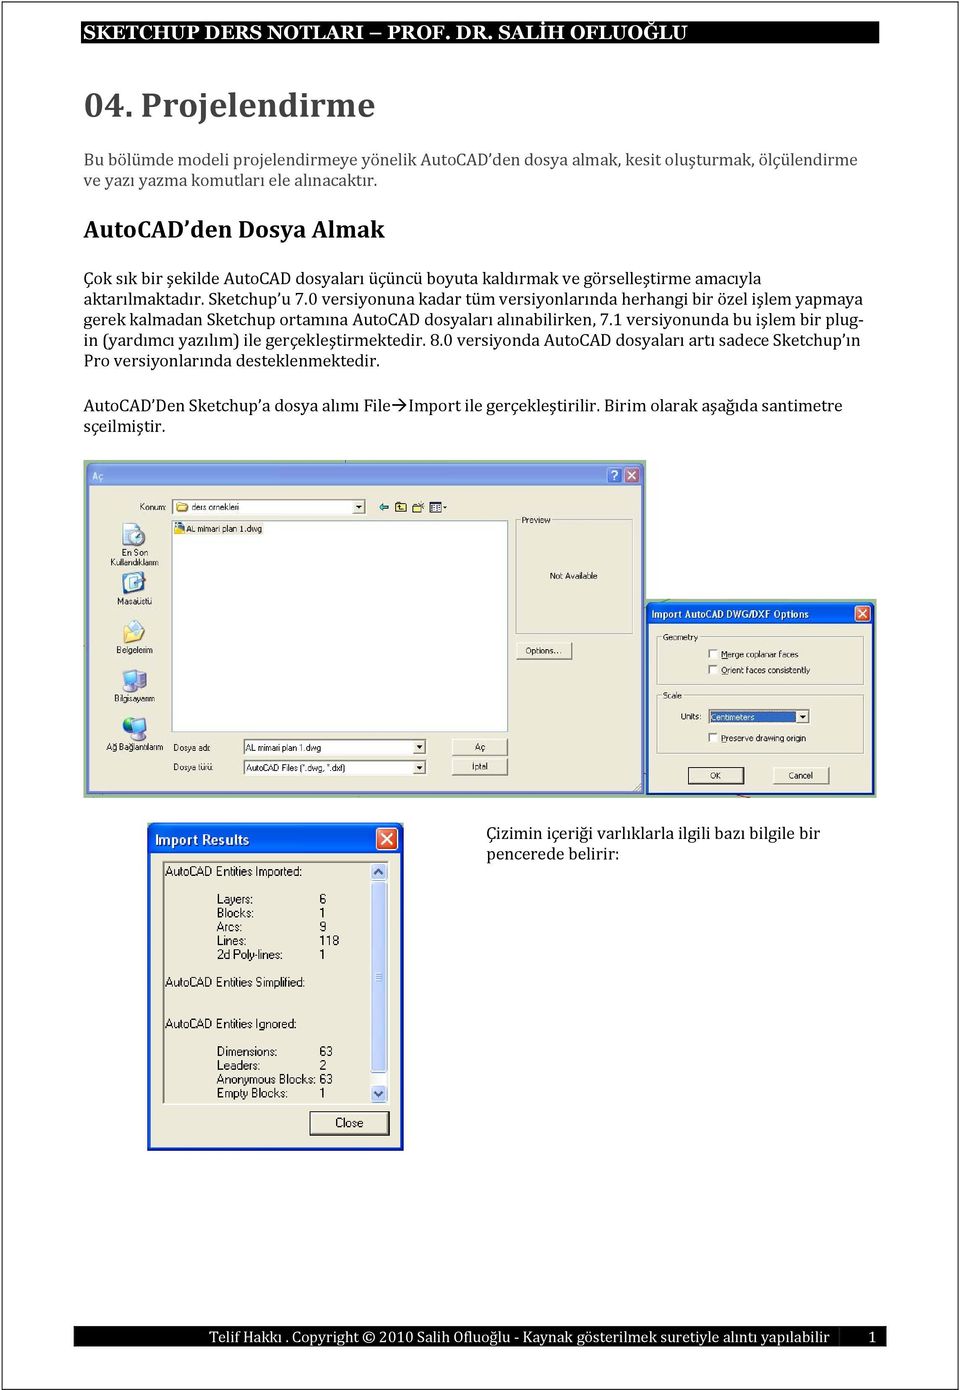 0 versiyonuna kadar tüm versiyonlarında herhangi bir özel işlem yapmaya gerek kalmadan Sketchup ortamına AutoCAD dosyaları alınabilirken, 7.